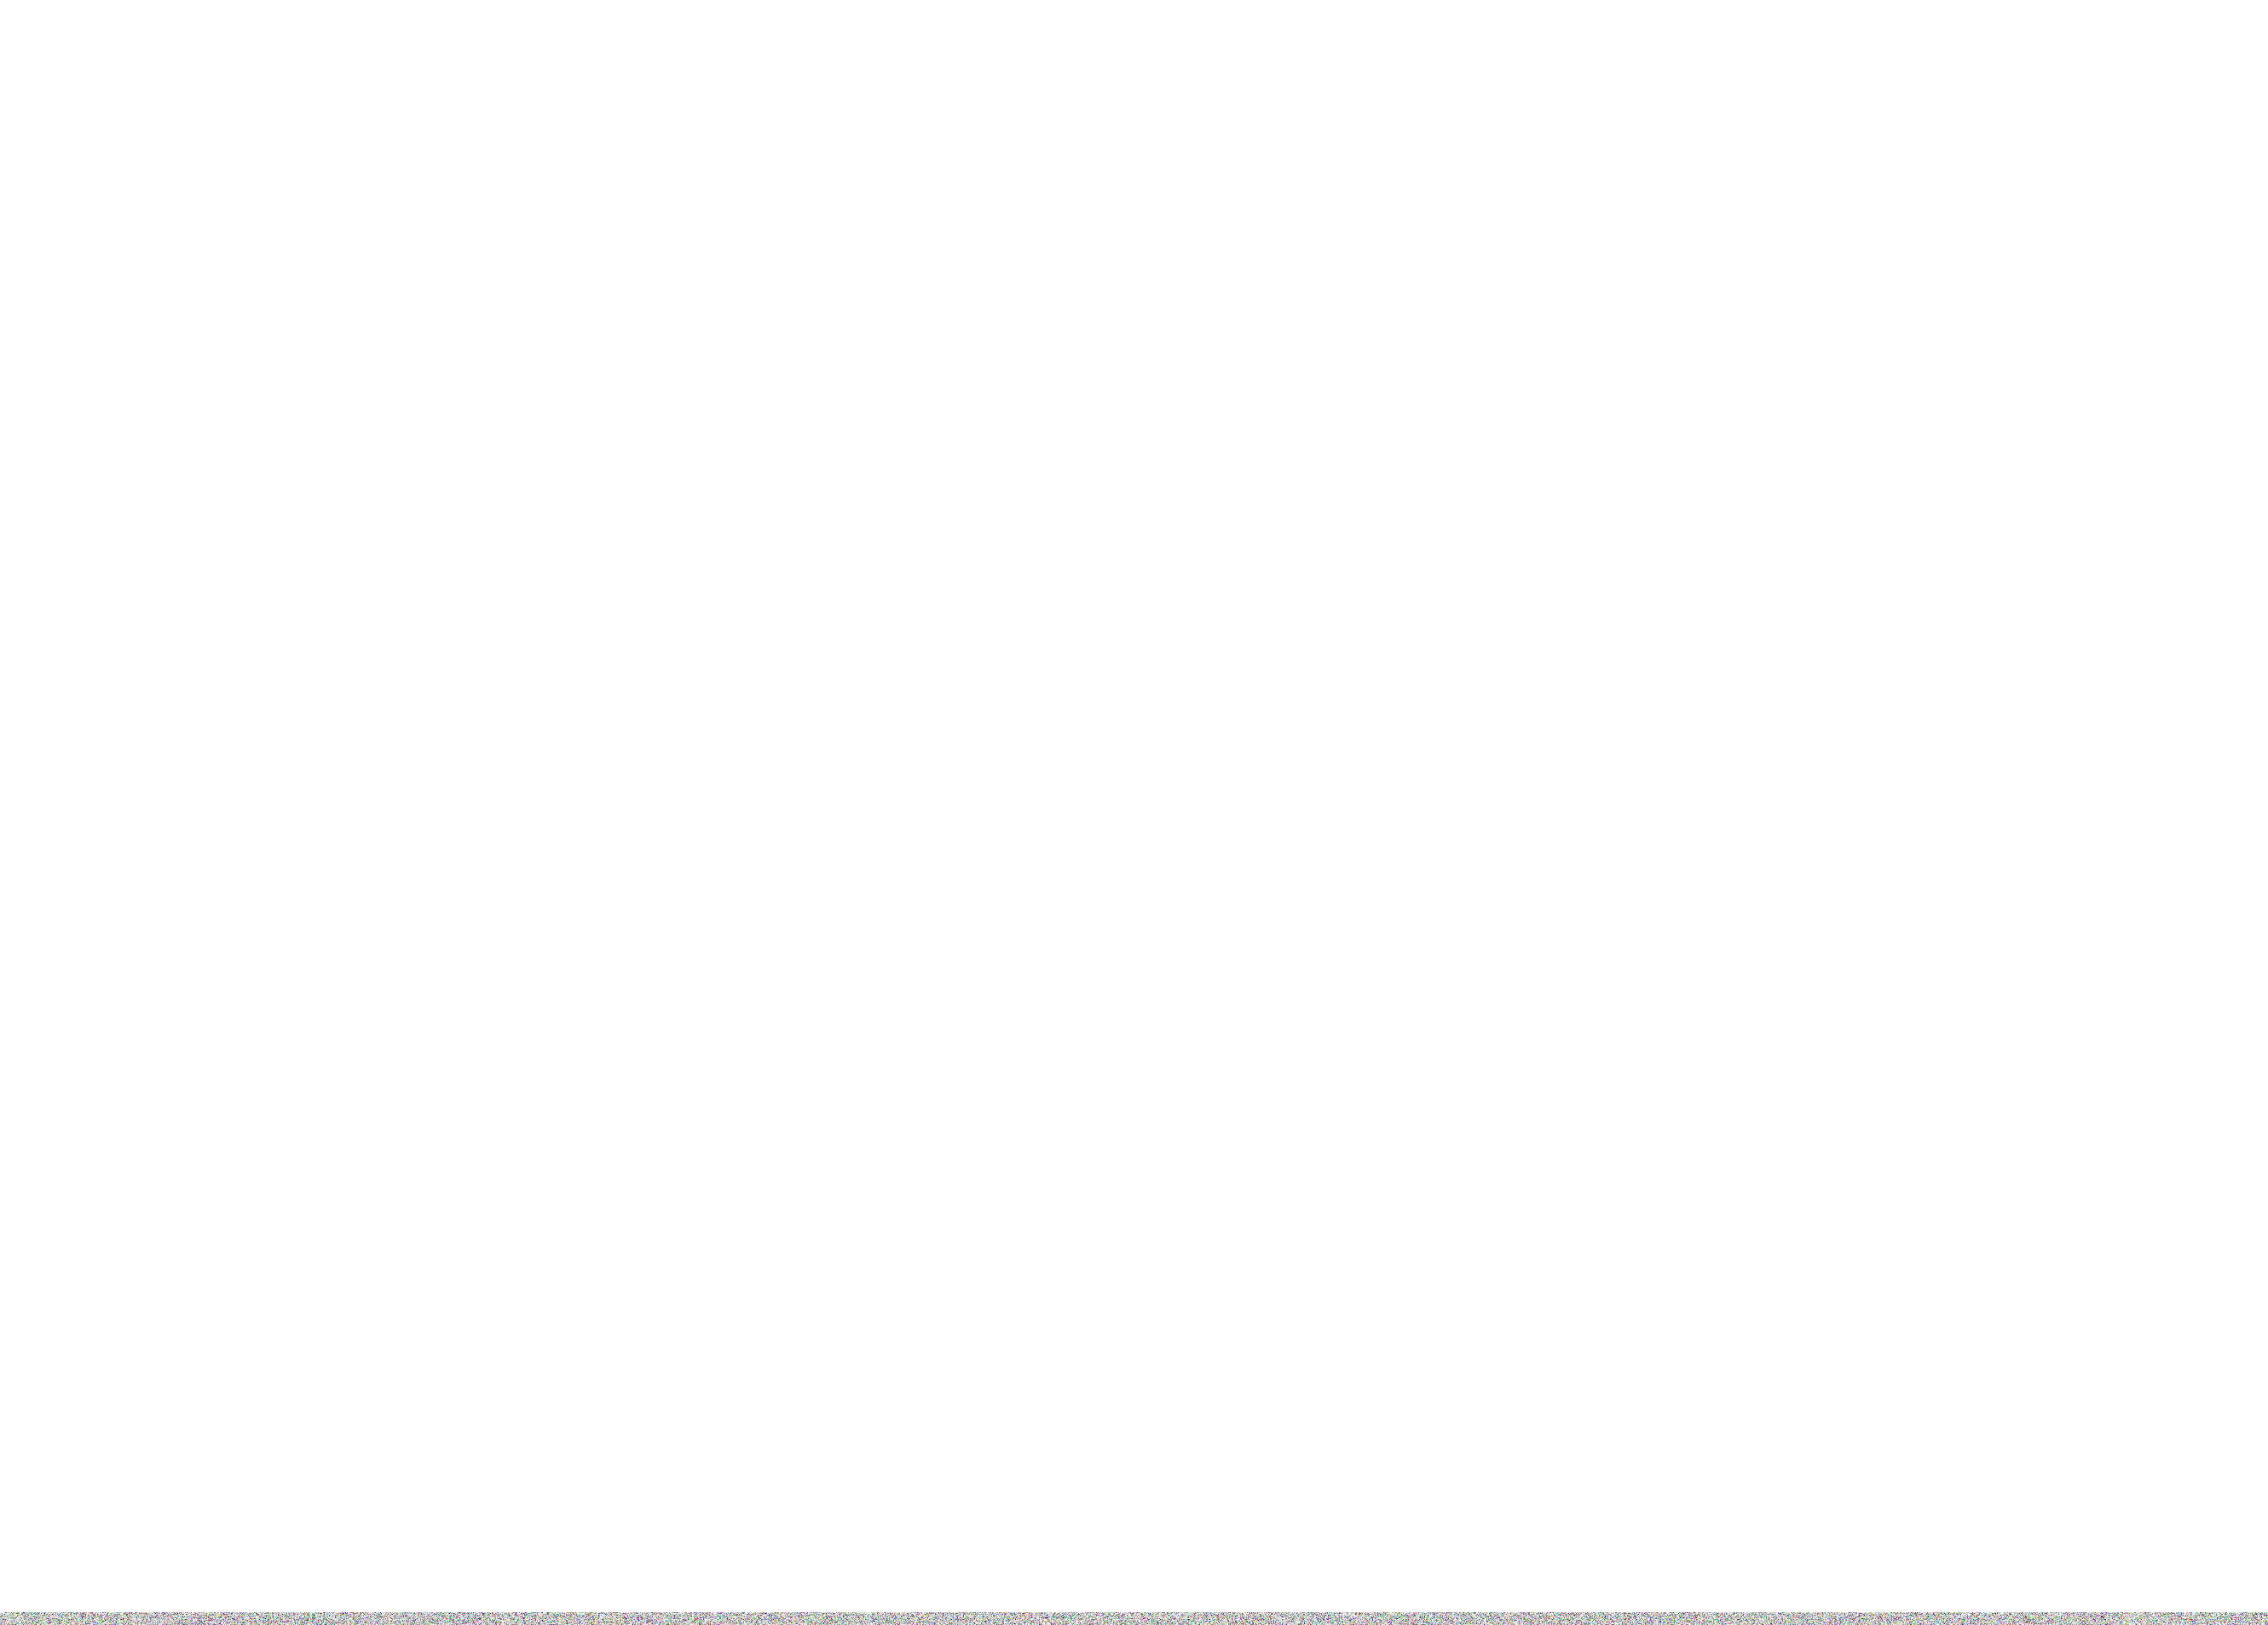 Fashion Art Toronto